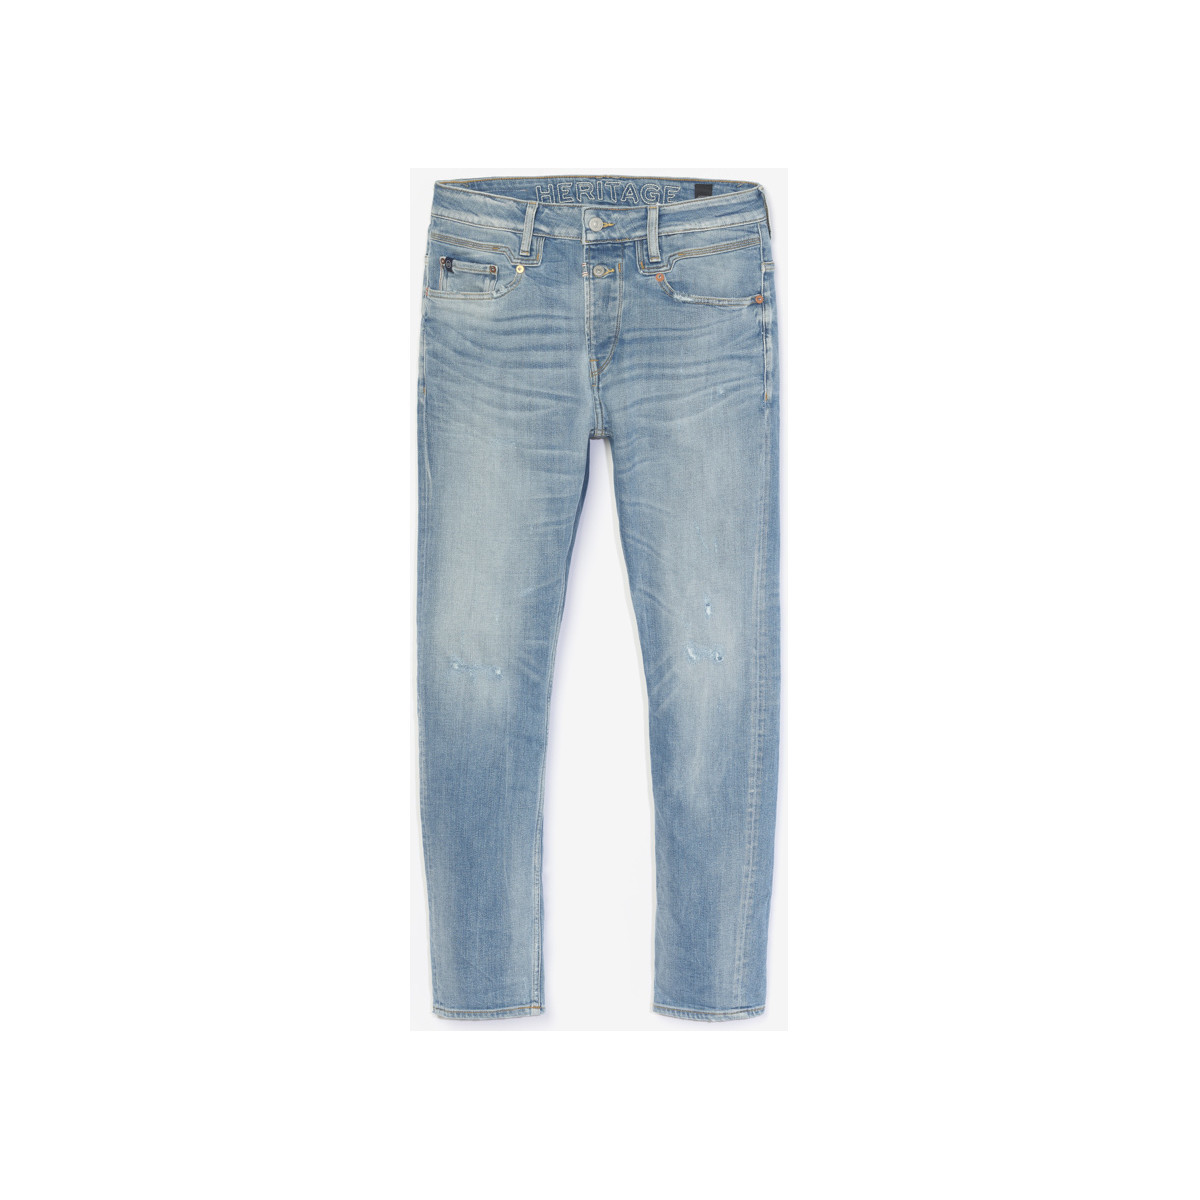 Le Temps des Cerises Bleu Raffi 900/16 tapered destroy jeans bleu i3GxWgbV